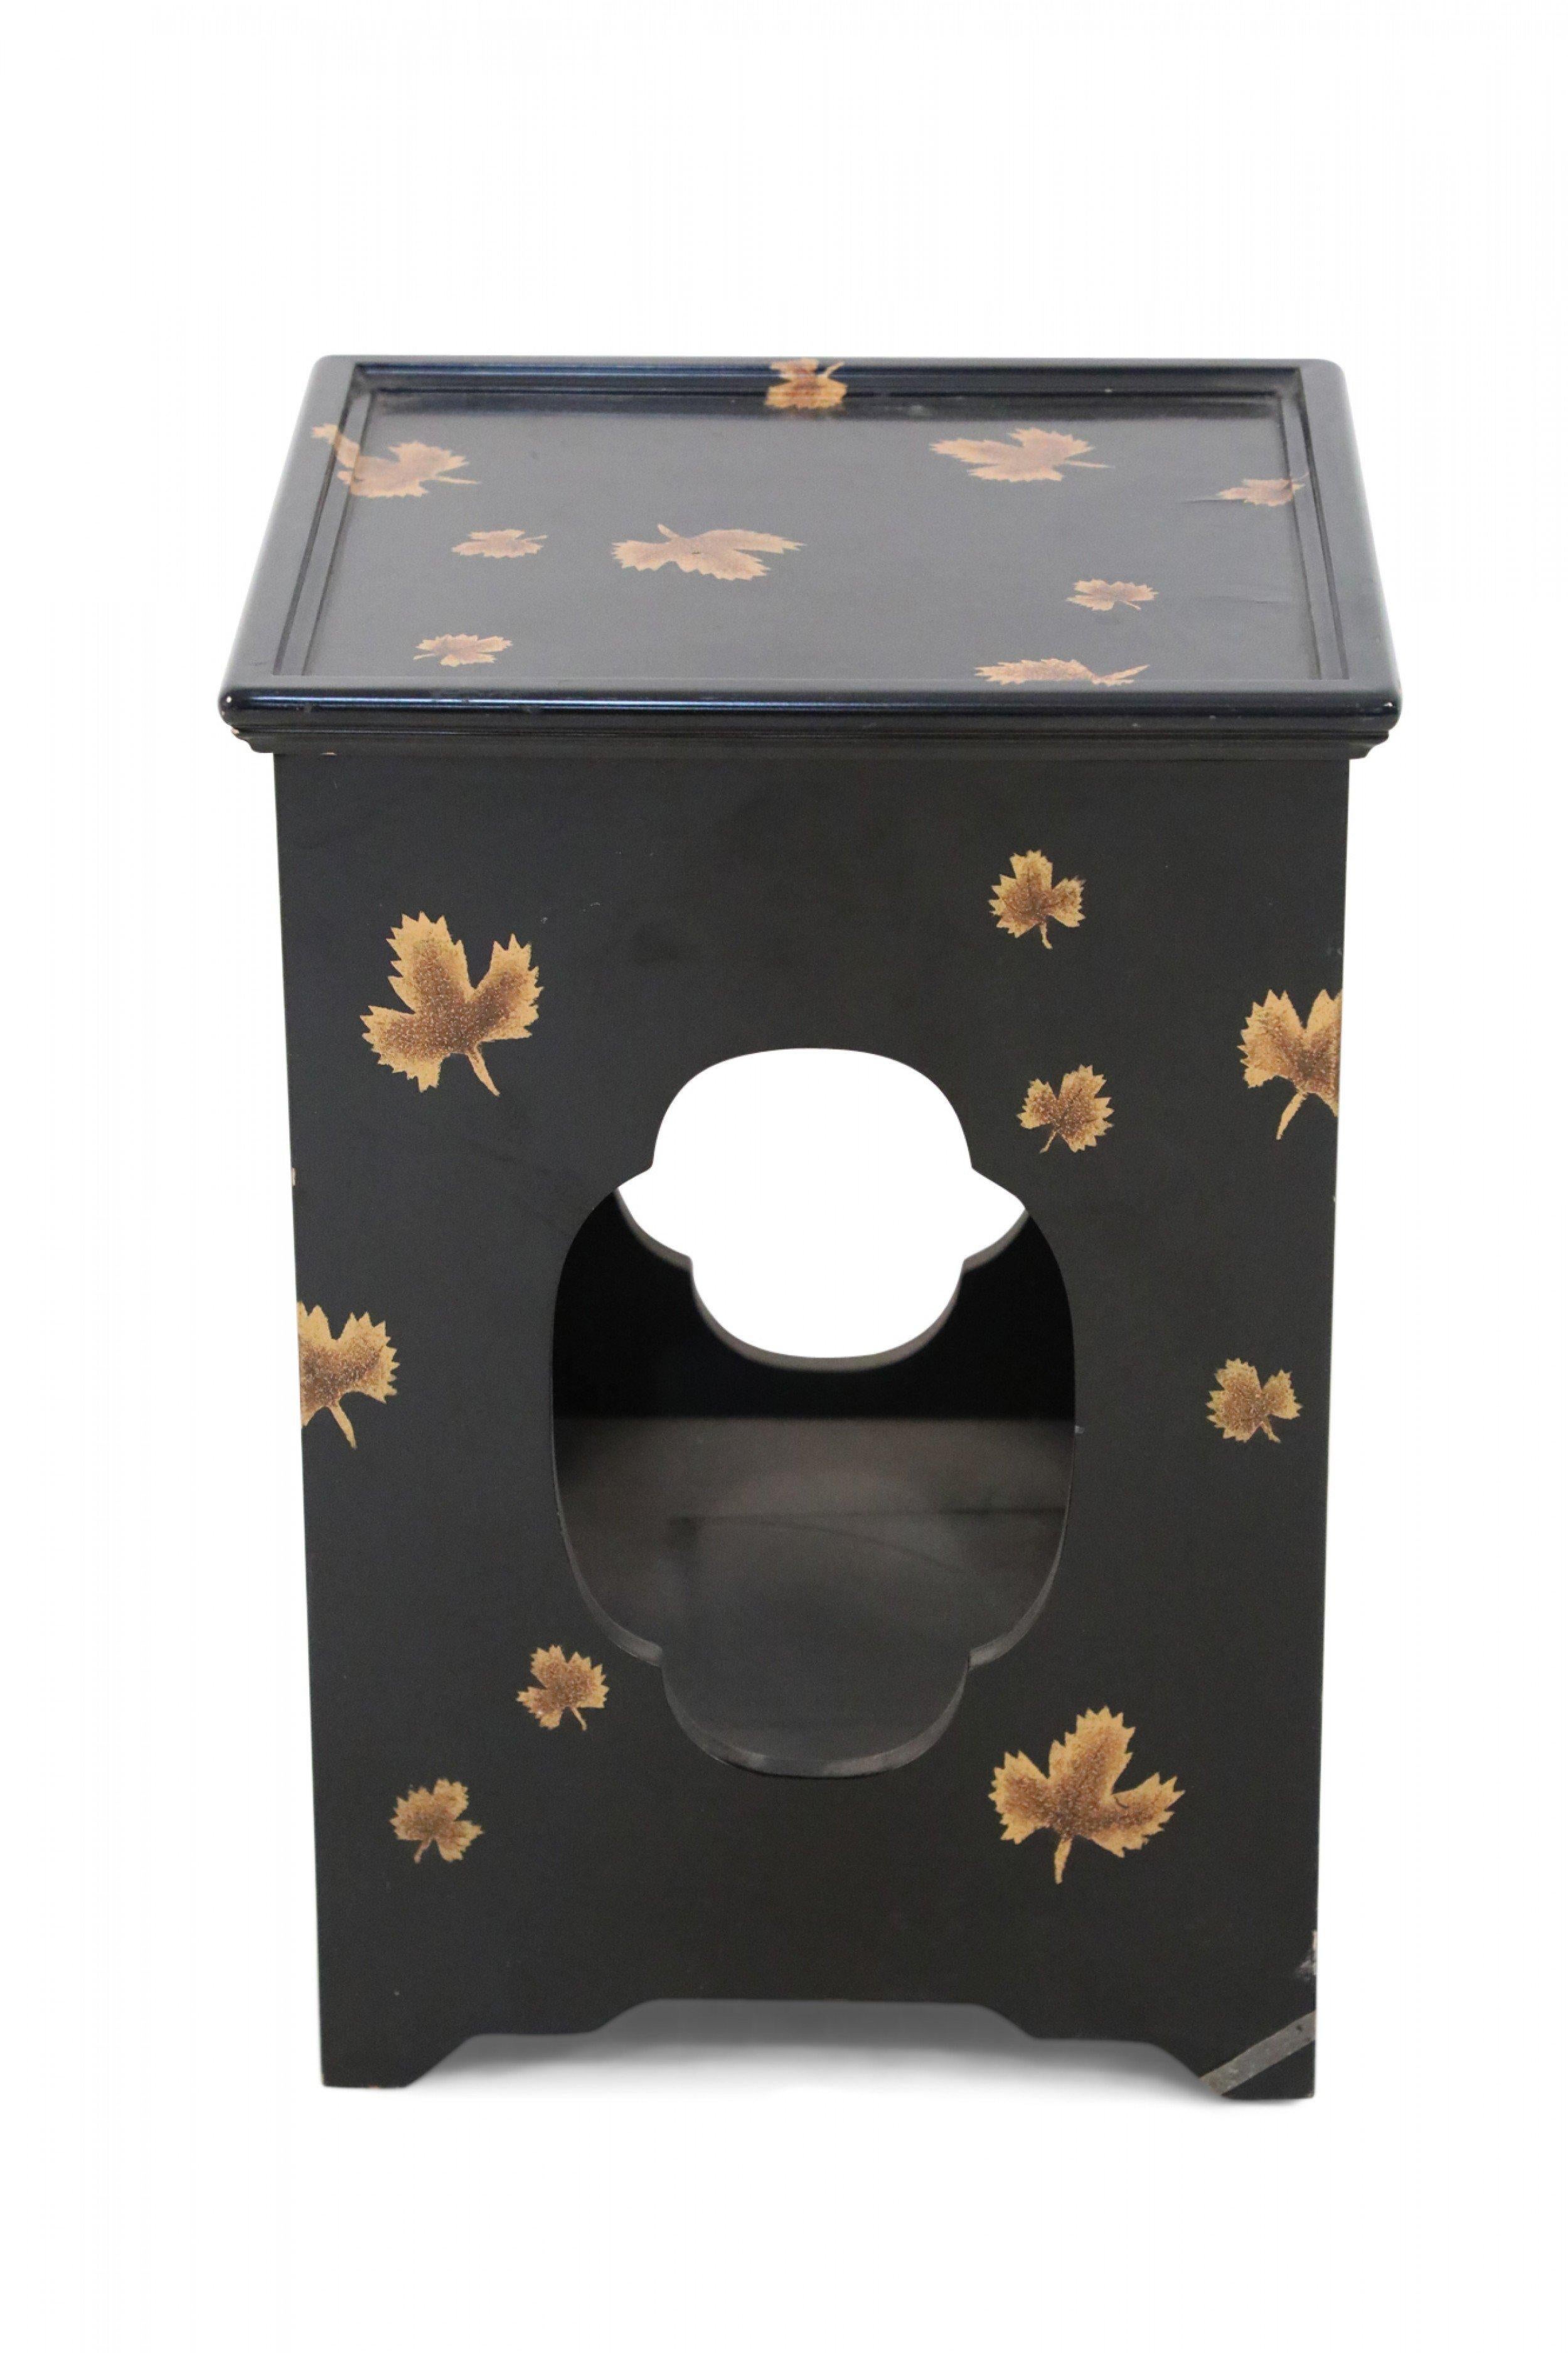 Tables d'appoint carrées en laque noire de Chine, caractérisées par des découpes en forme de quatre-feuilles sur tous les côtés et un motif de feuille d'érable doré sur toute la surface (prix par paire).
  